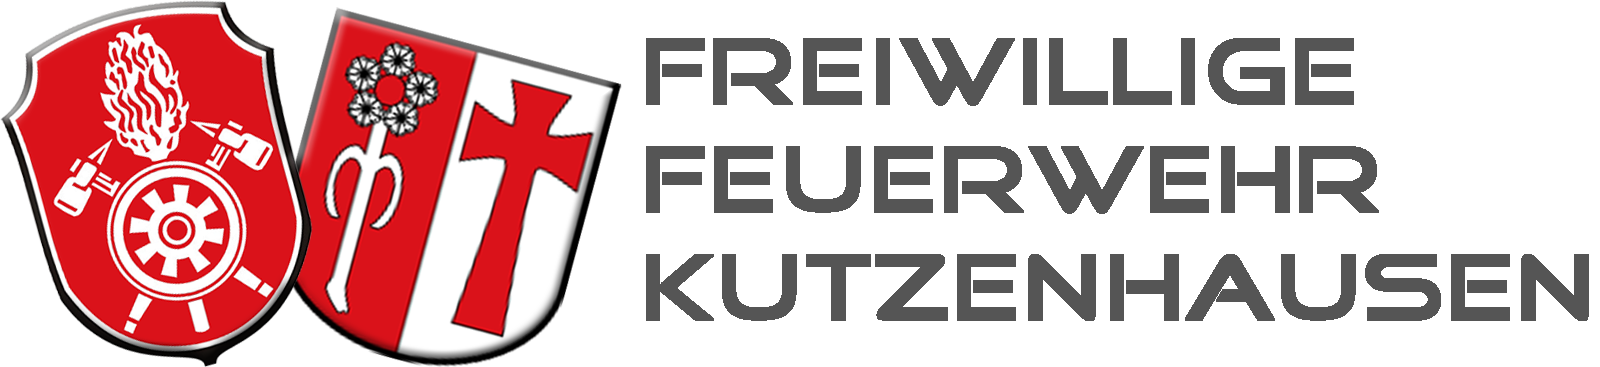 FFW Kutzenhausen